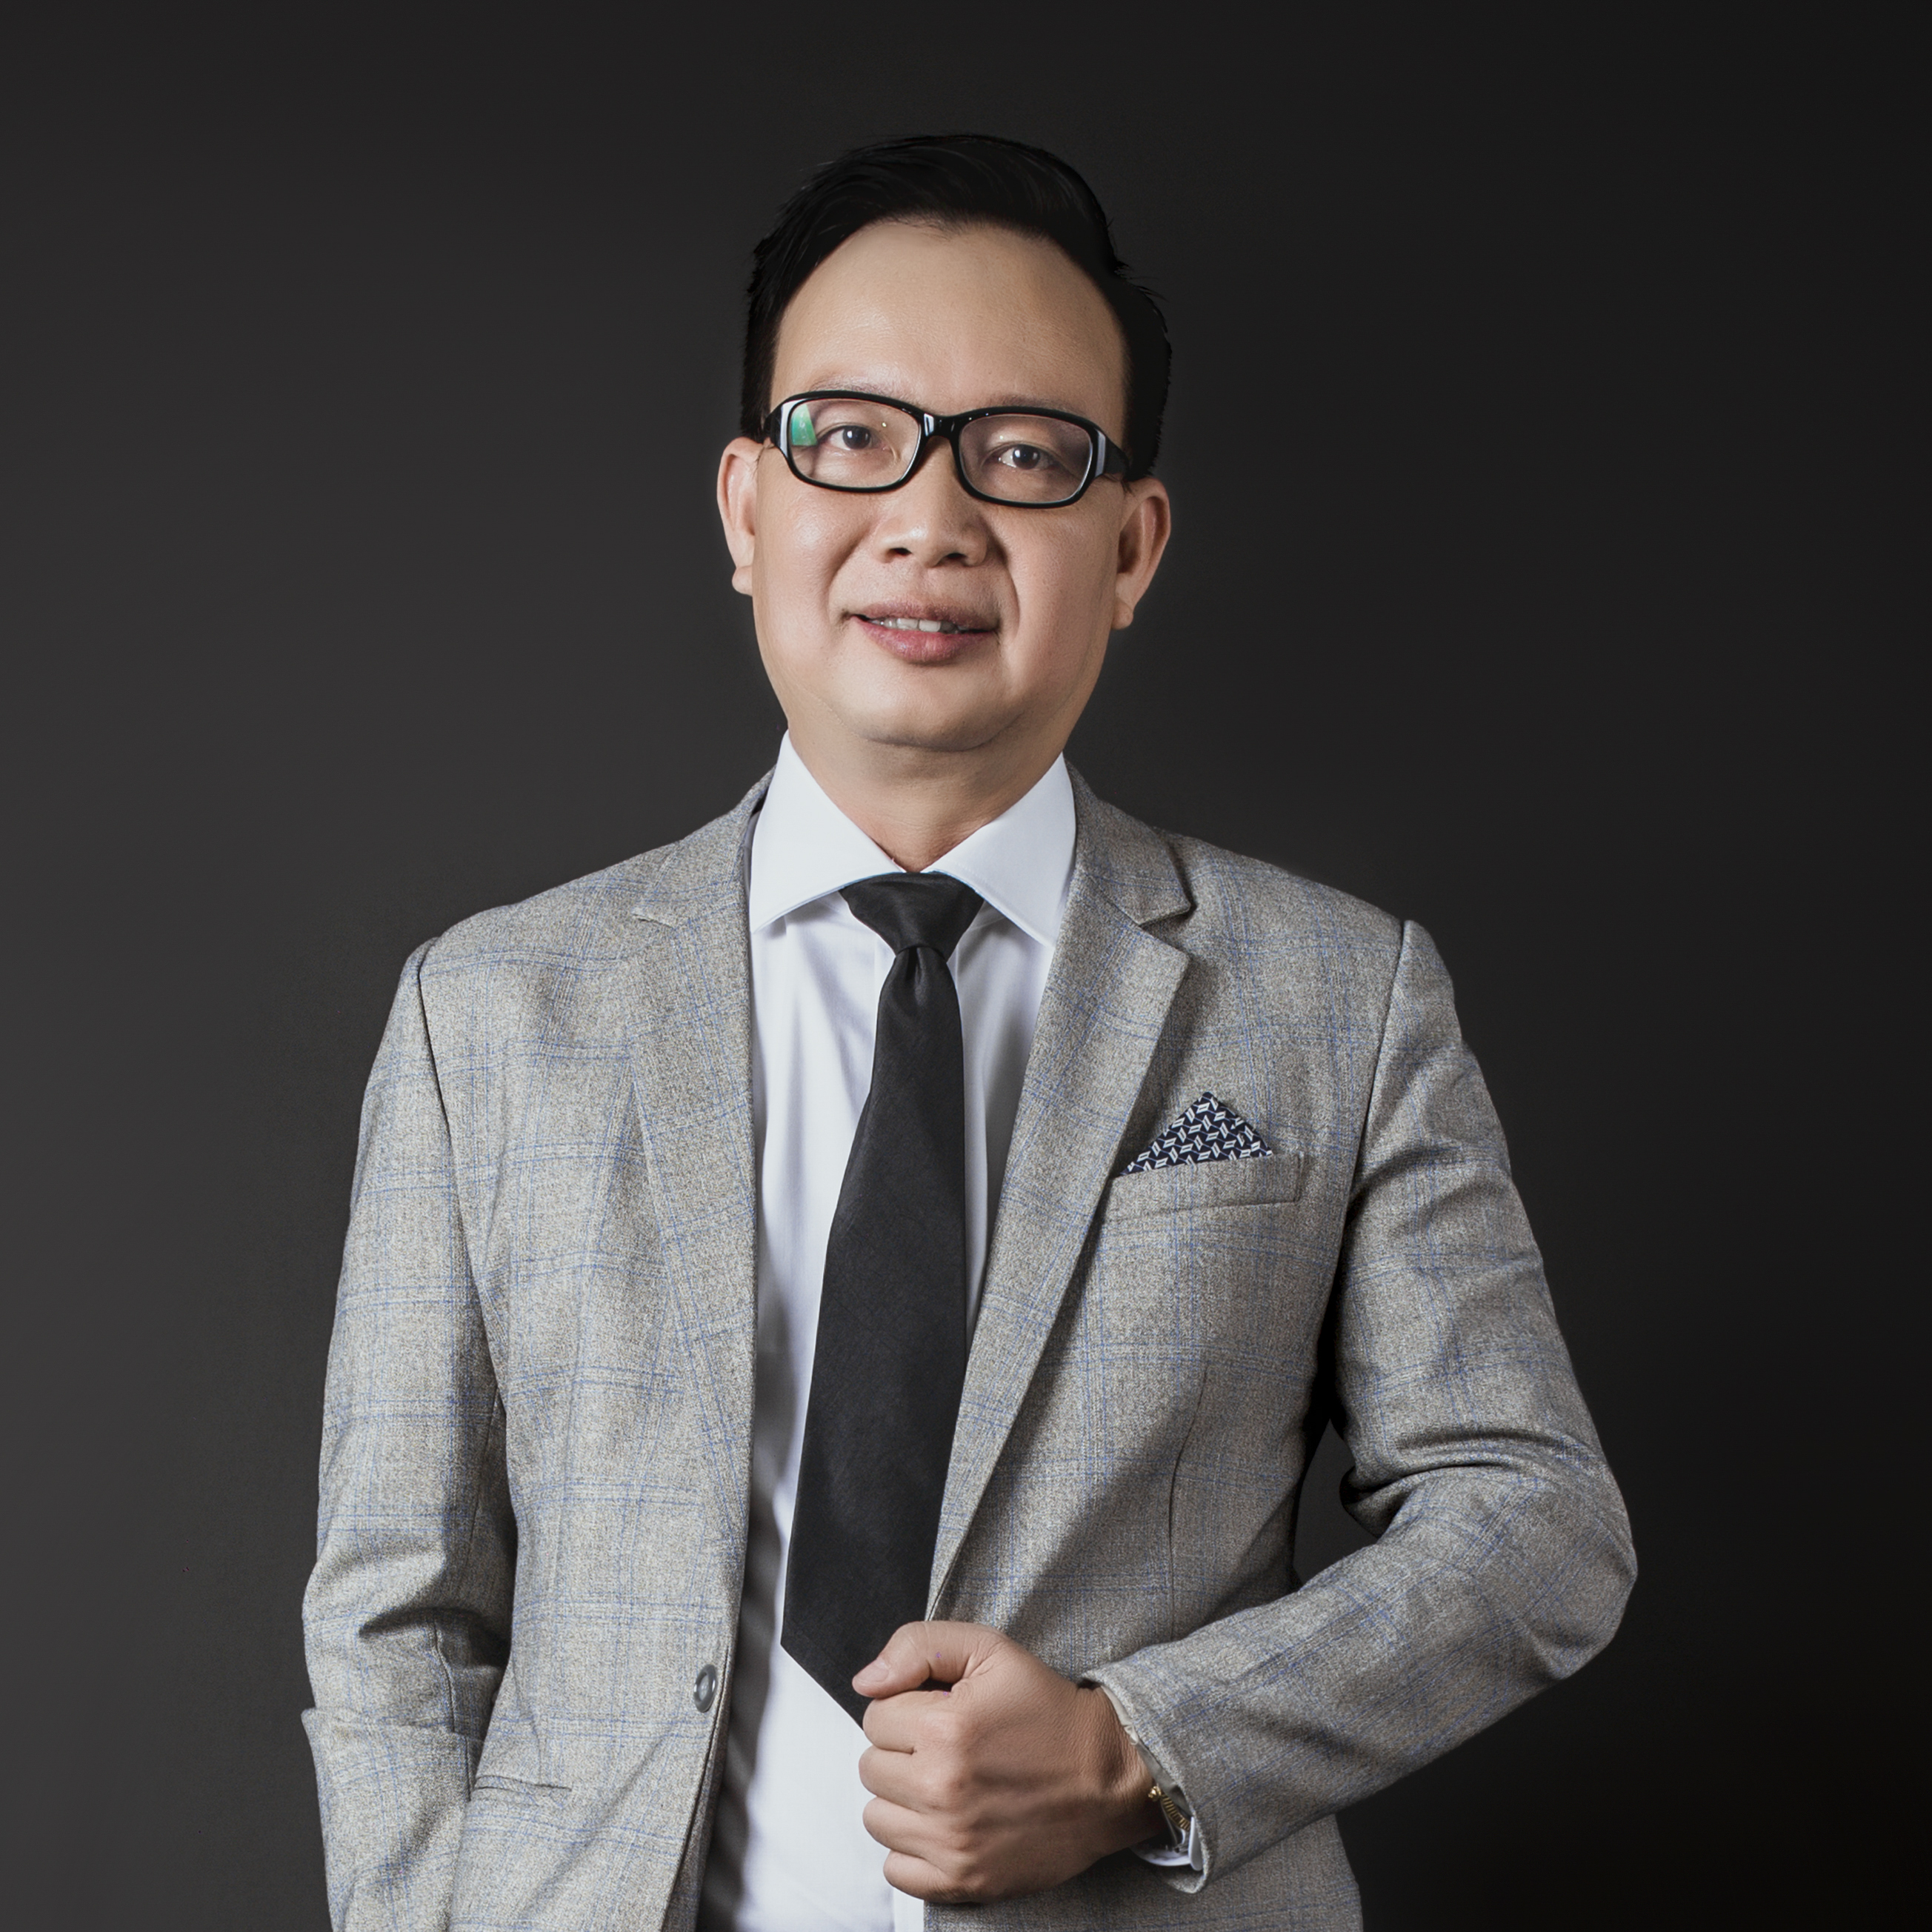 Ông Mai Quốc Việt- CEO Tư Vấn Minh, là người có nhiều năm kinh nghiệm sẽ giúp doanh nghiệp của bạn hoàn thành hồ sơ, thủ tục đăng ký giấy phép đầu tư nhanh chóng và đơn giản hóa thủ tục